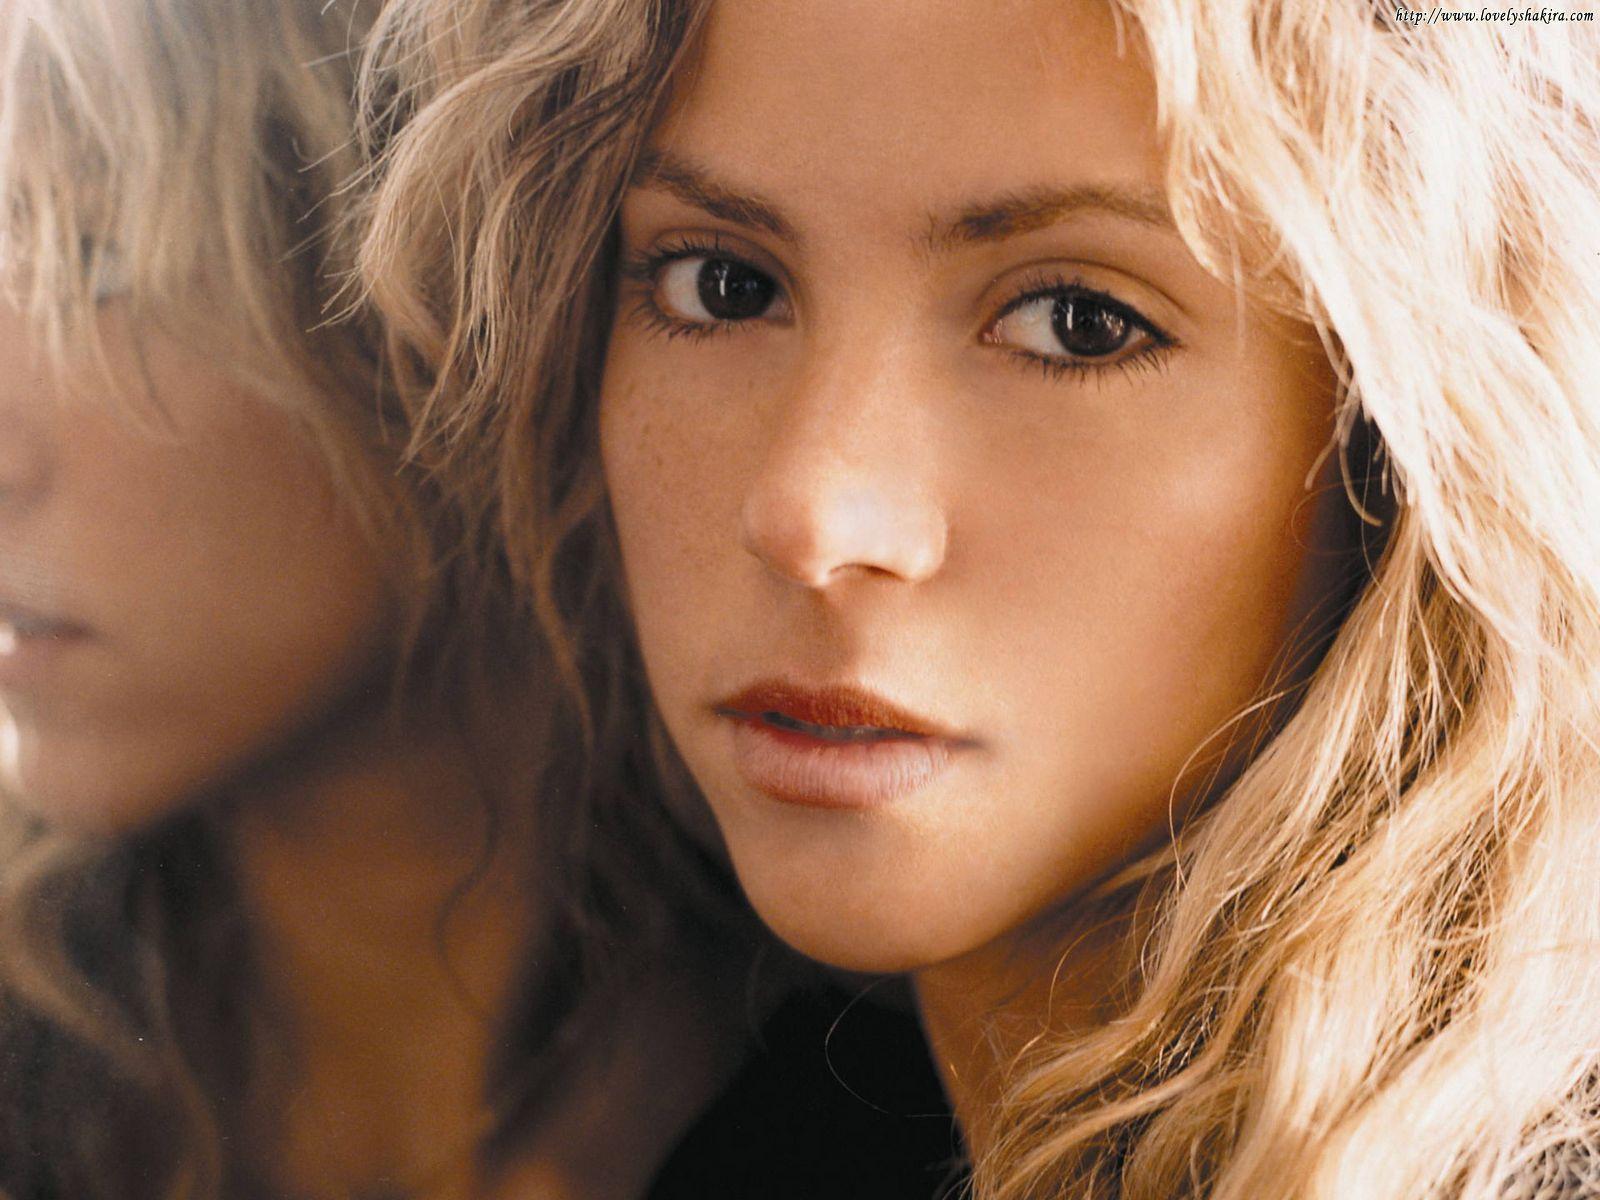 Singer Shakira Image 02. hdwallpaper